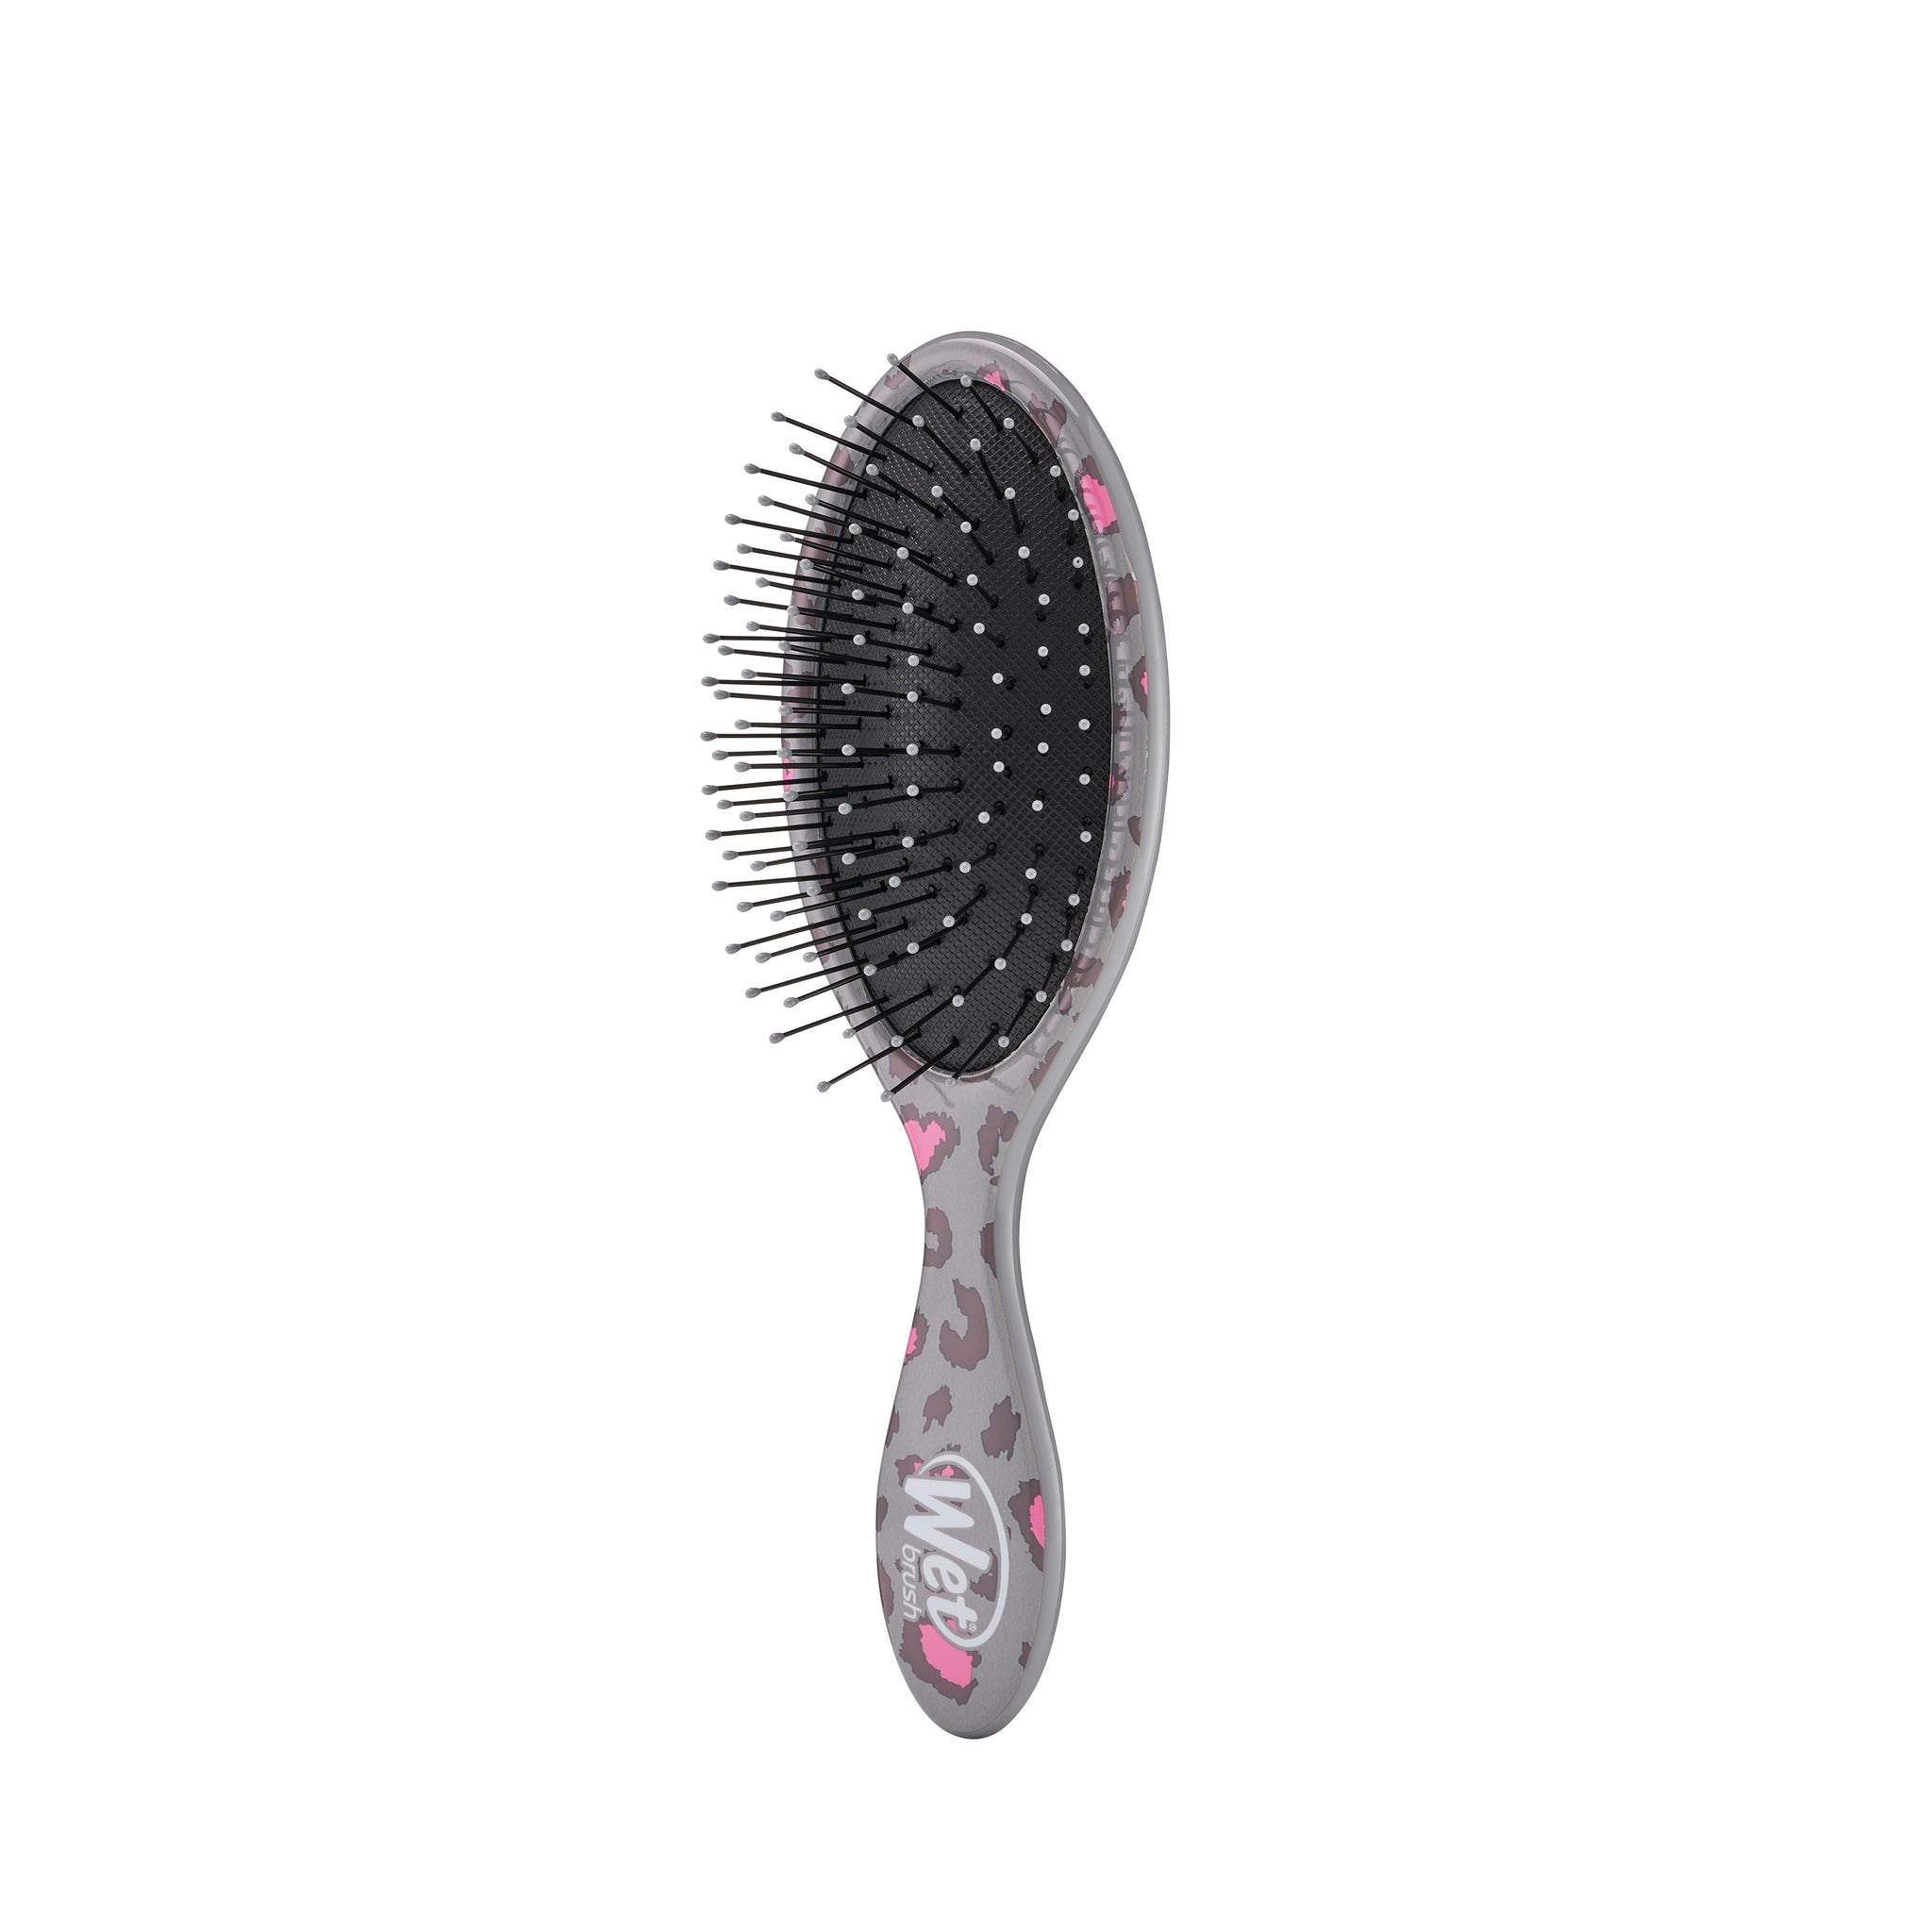 Wet Brush Mini Detangler Hair Brush with IntelliFlex Bristles